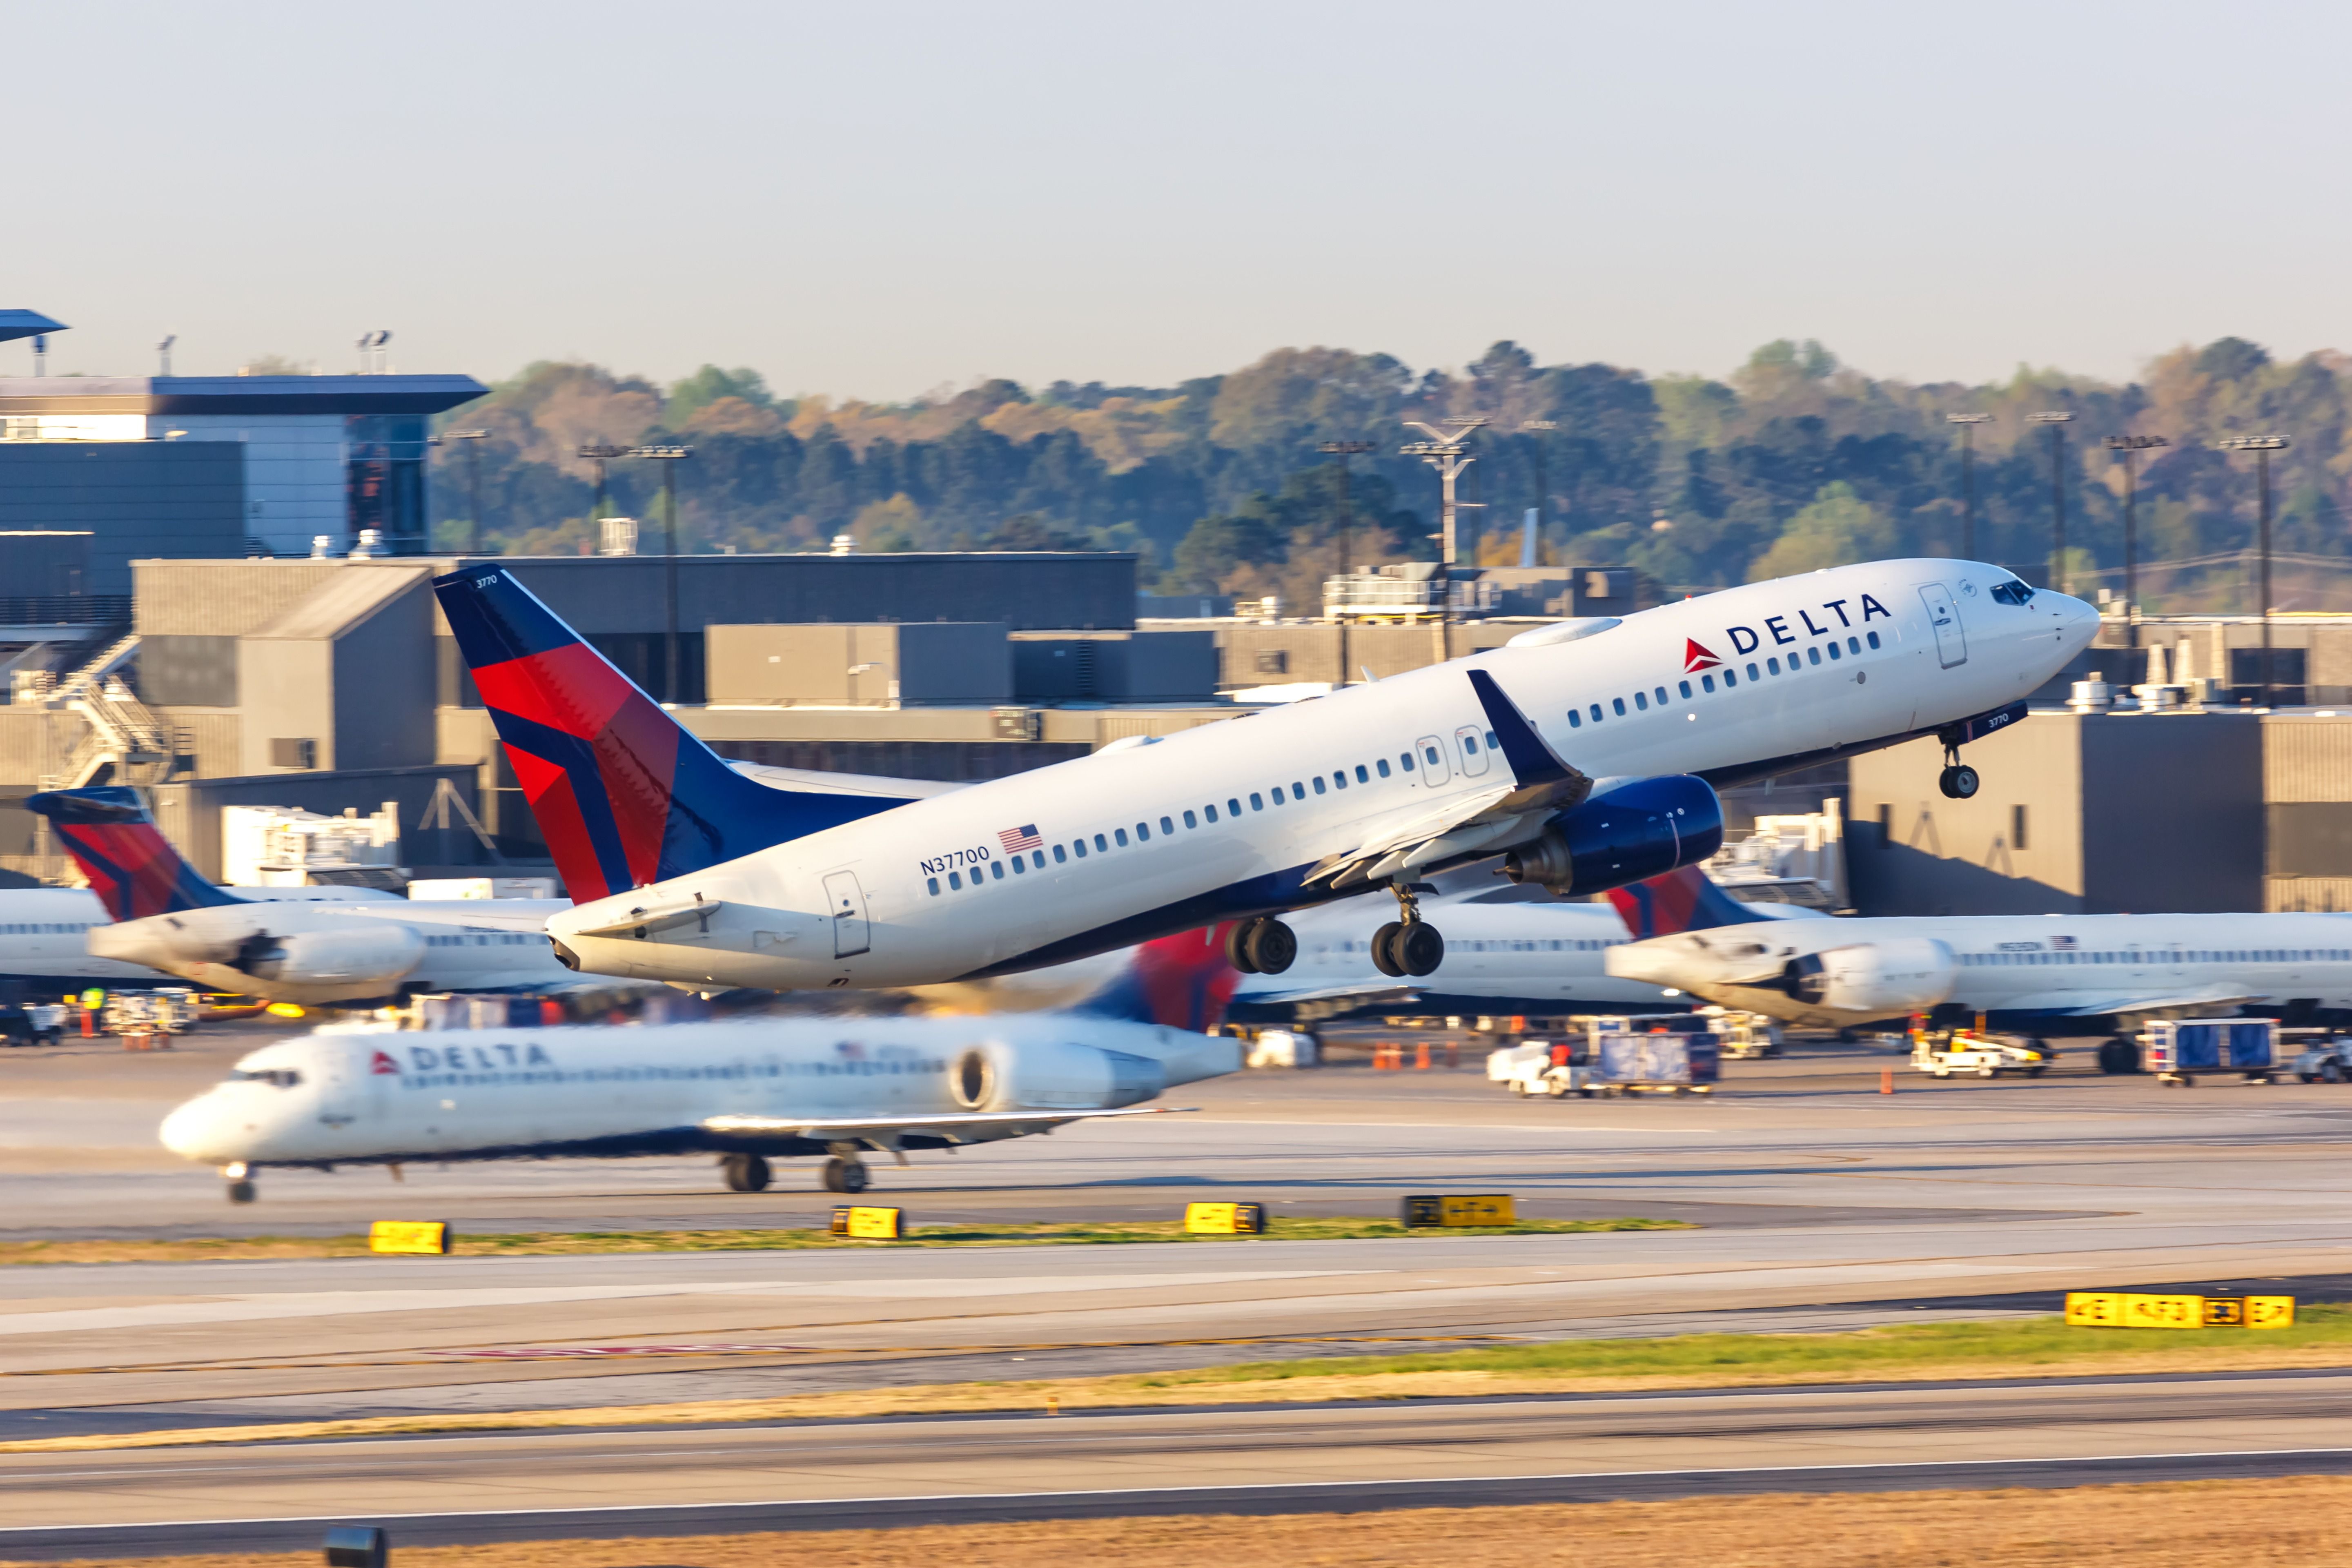 Several Delta Air Lines aircraft at an airport.